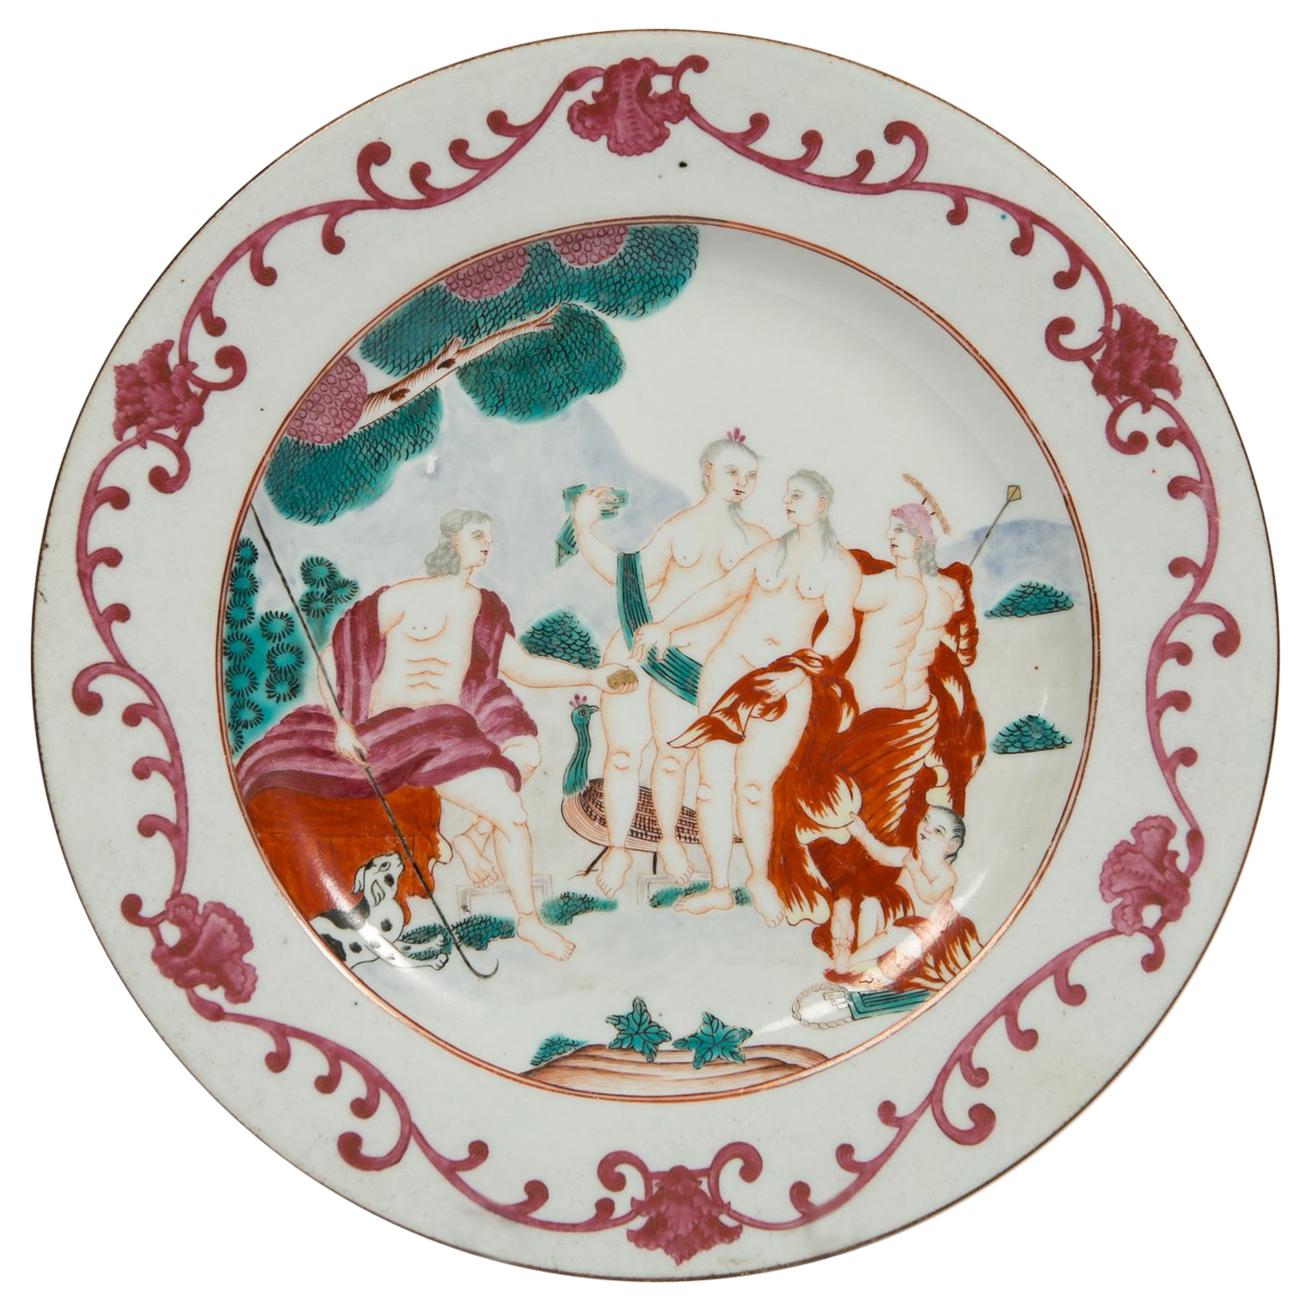 Judgement en assiette en porcelaine d'exportation chinoise de Paris fabriqué vers 1750